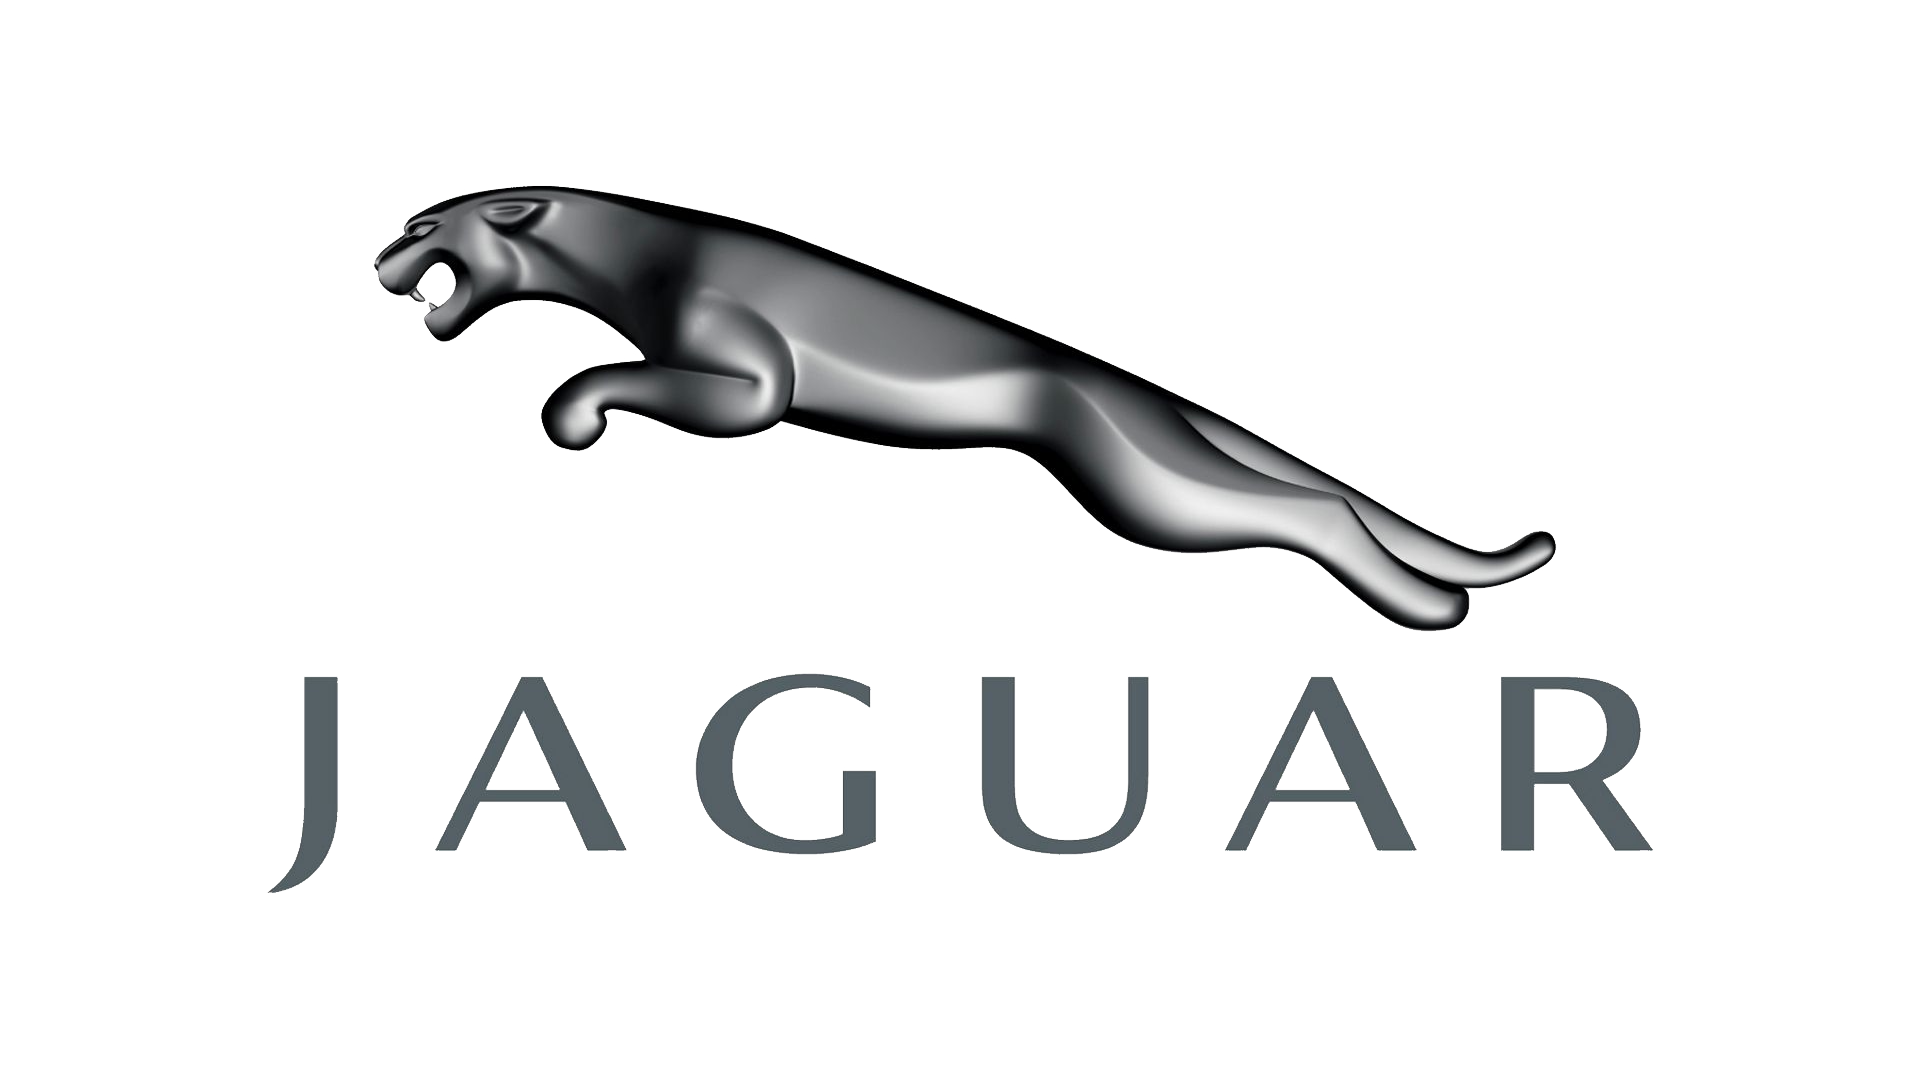 jaguar clipart logo ferrari